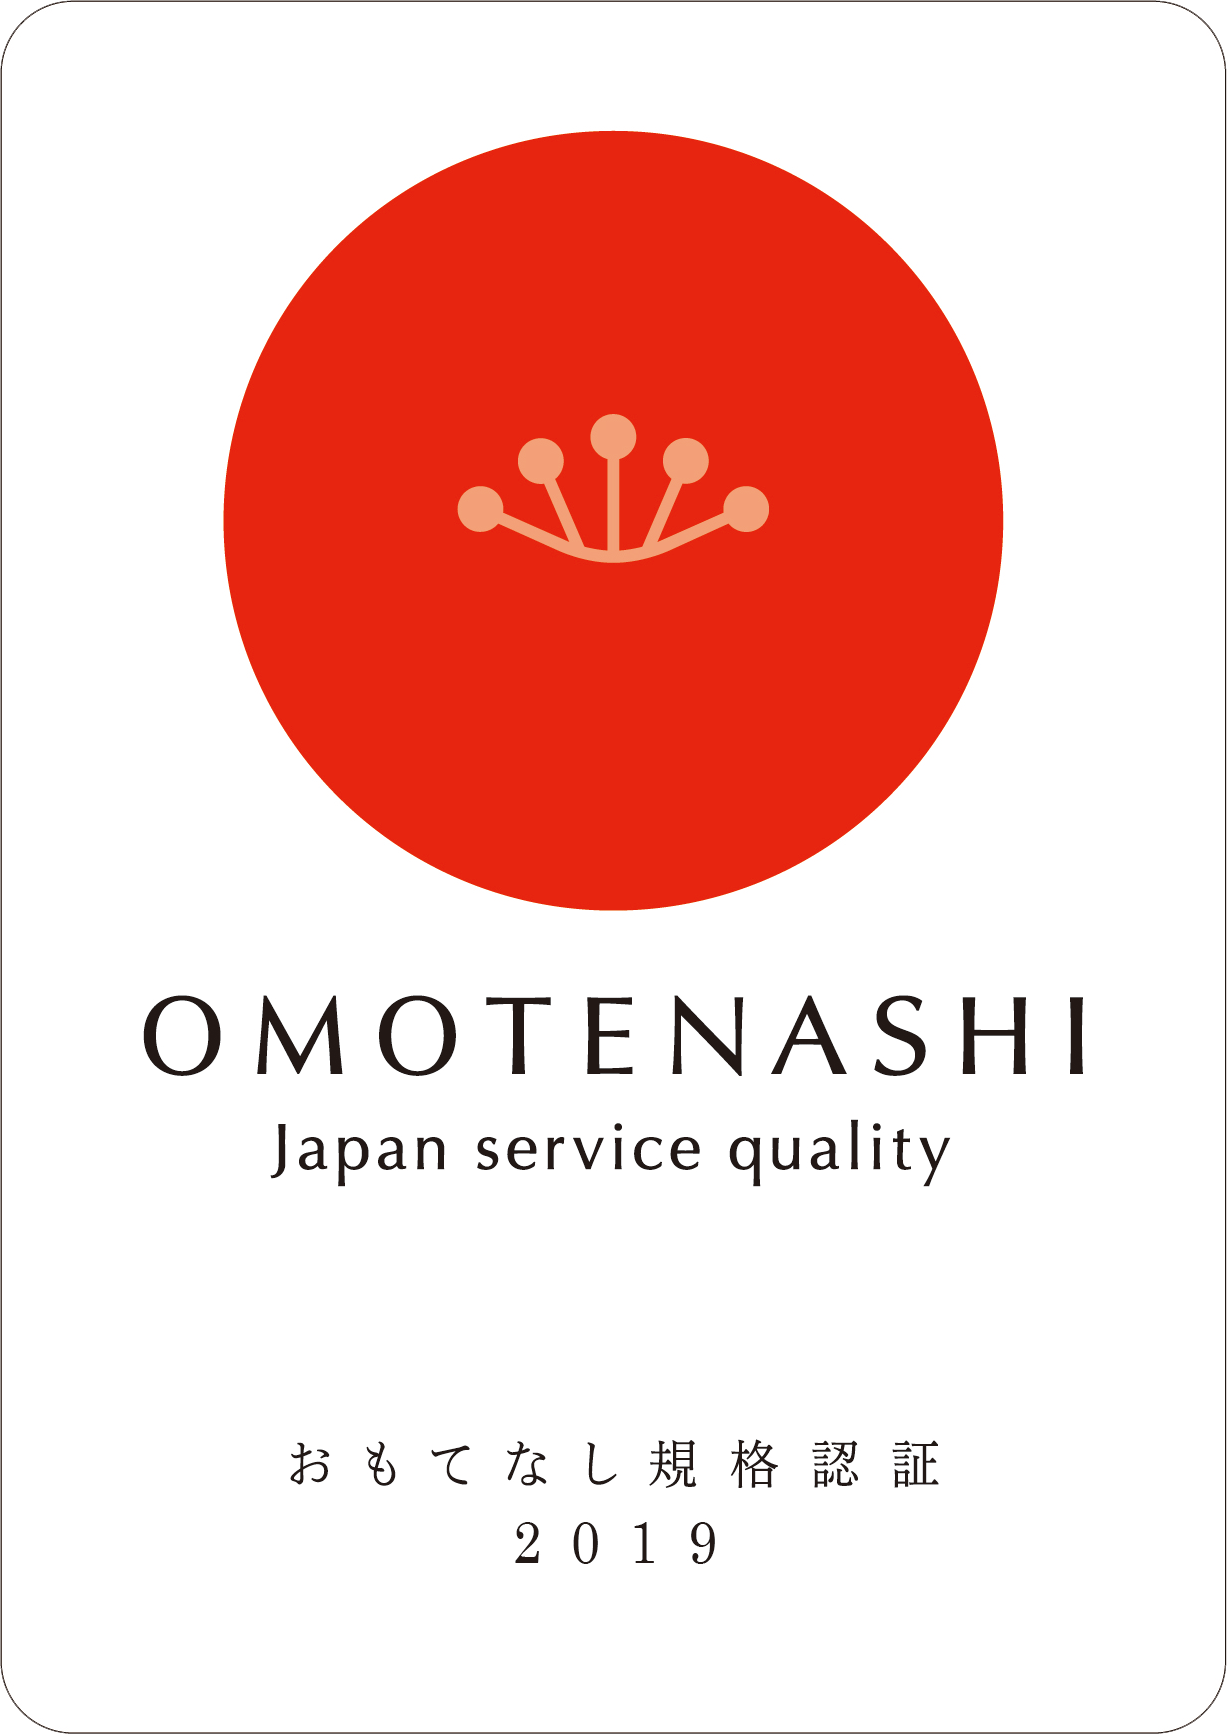 OMOTENASHI